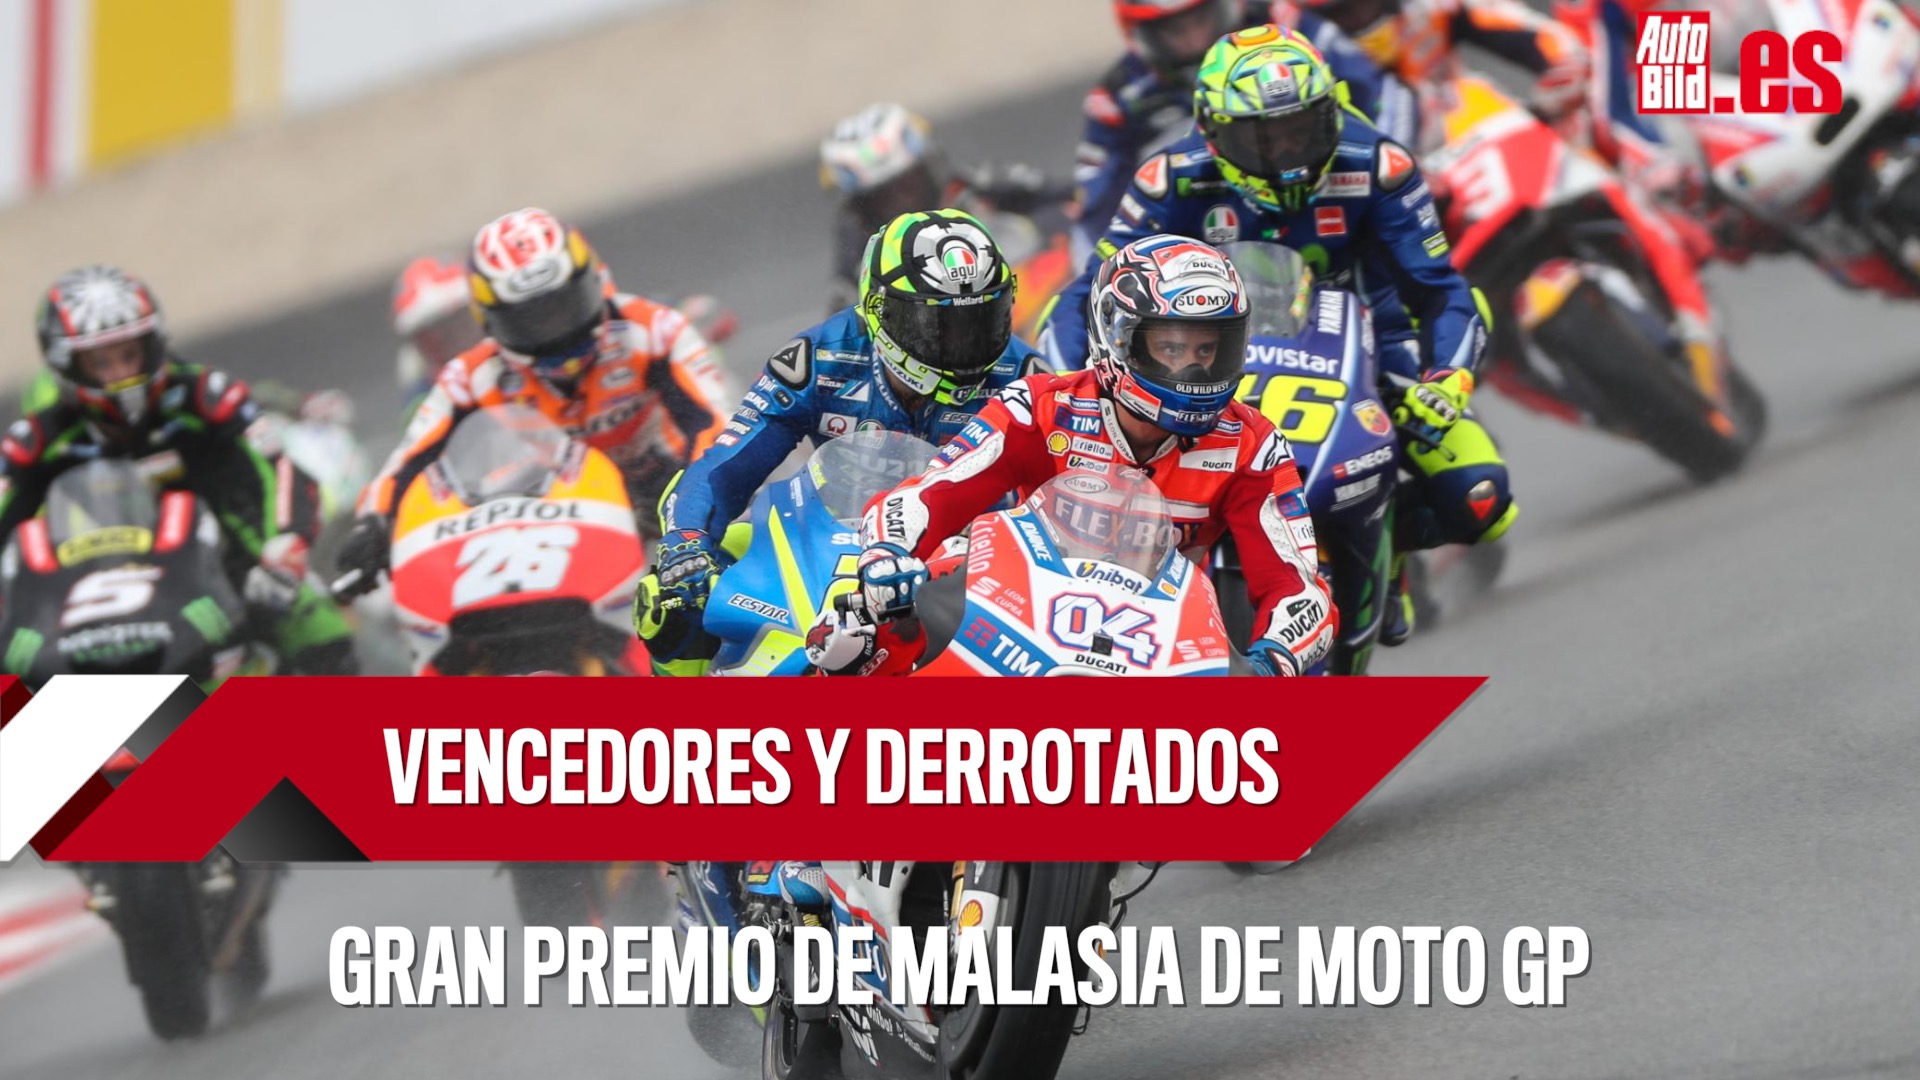 Cómo ver online y gratis MotoGP Valencia 2017? Auto Bild España